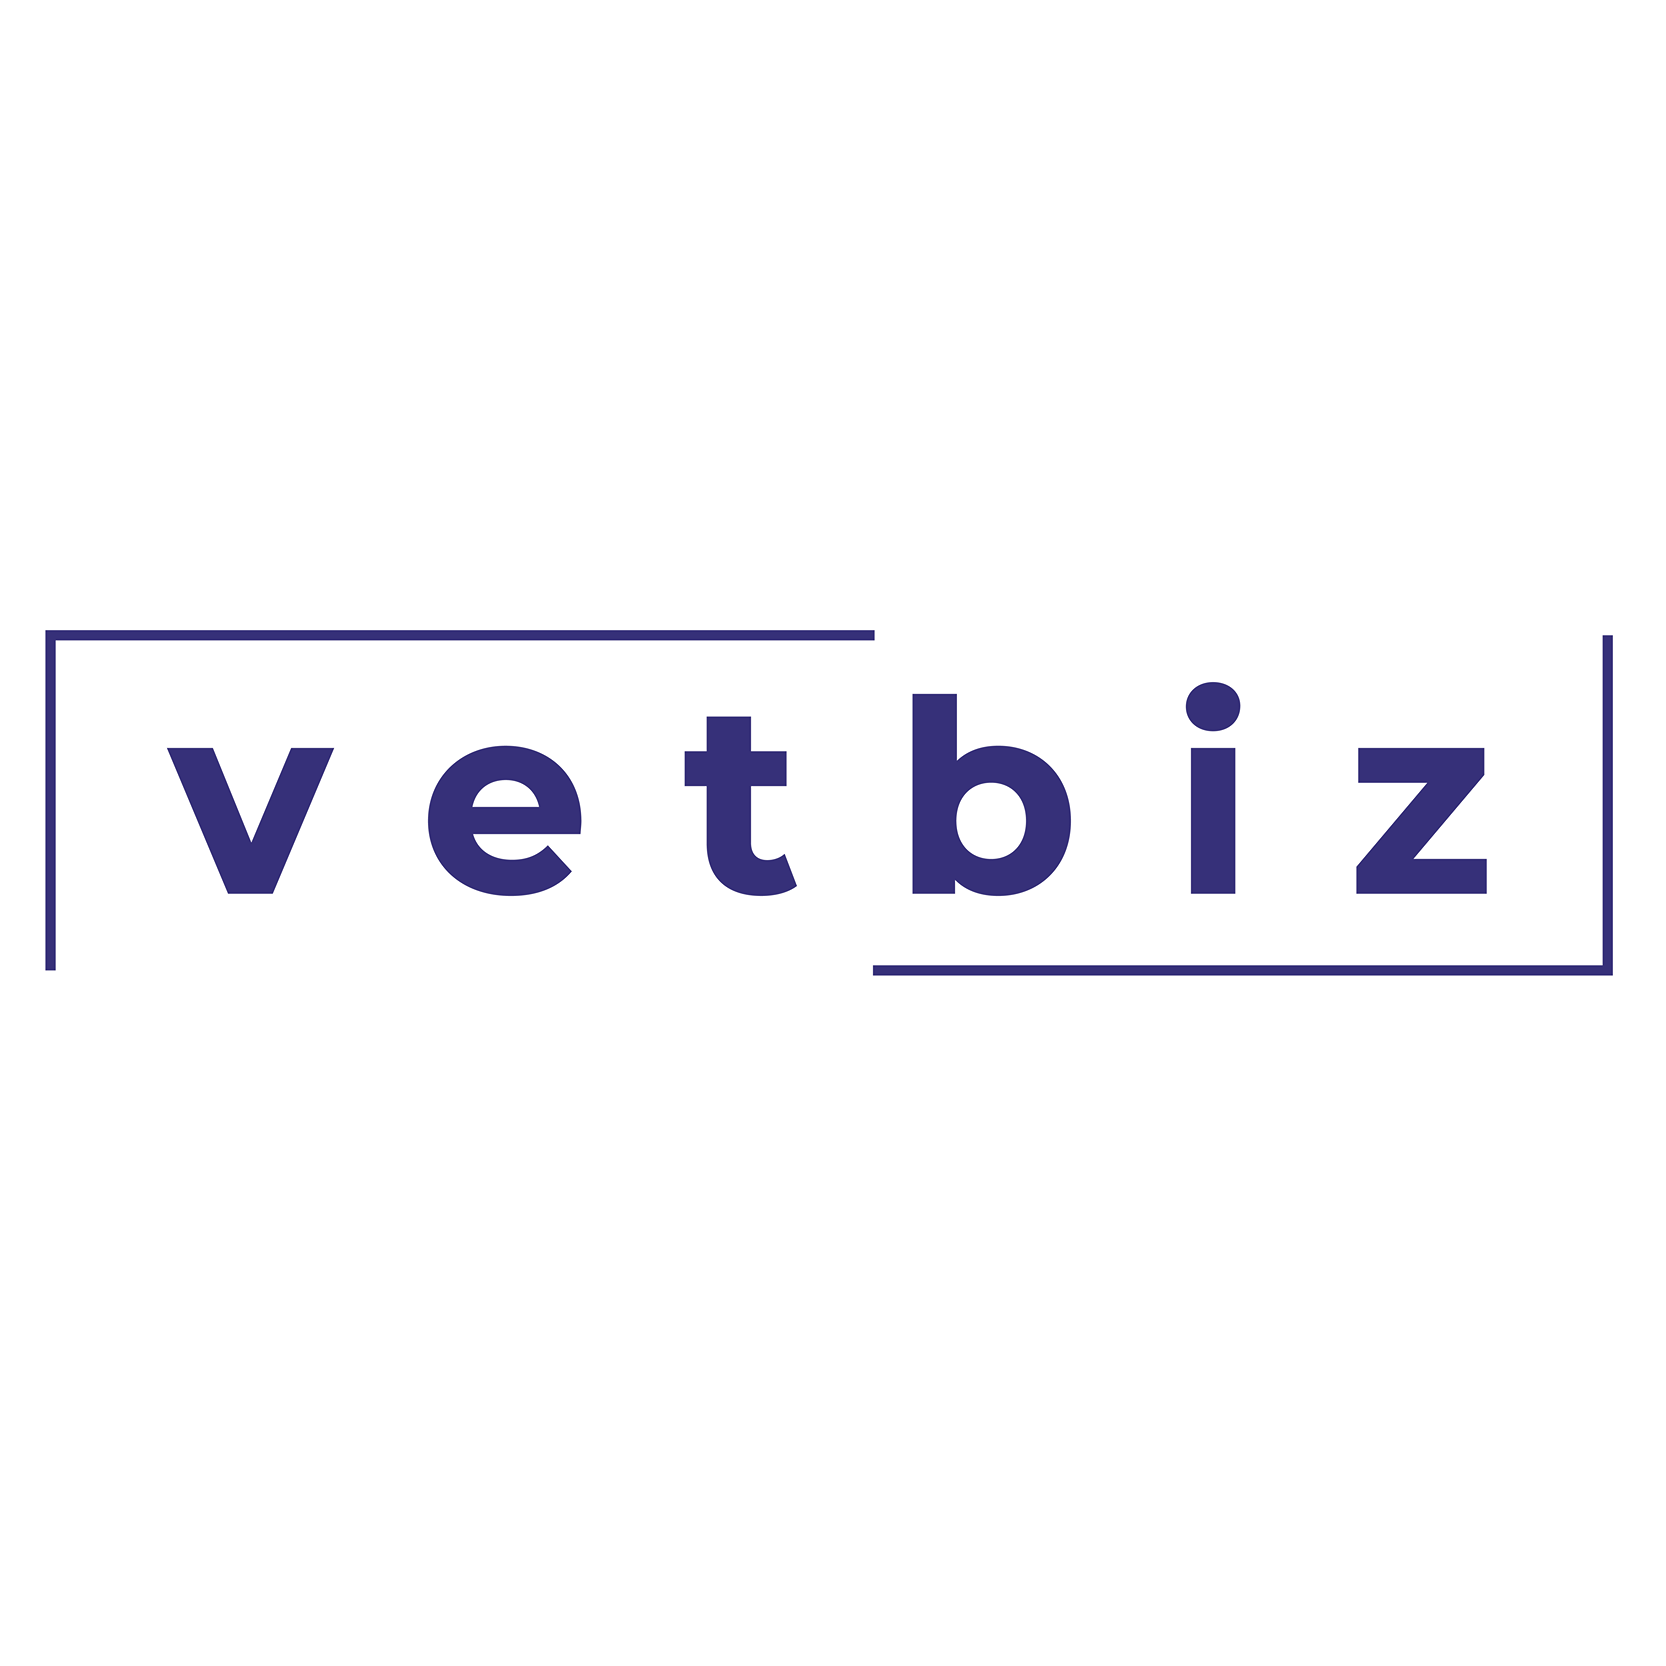 VetBiz in purple letters.